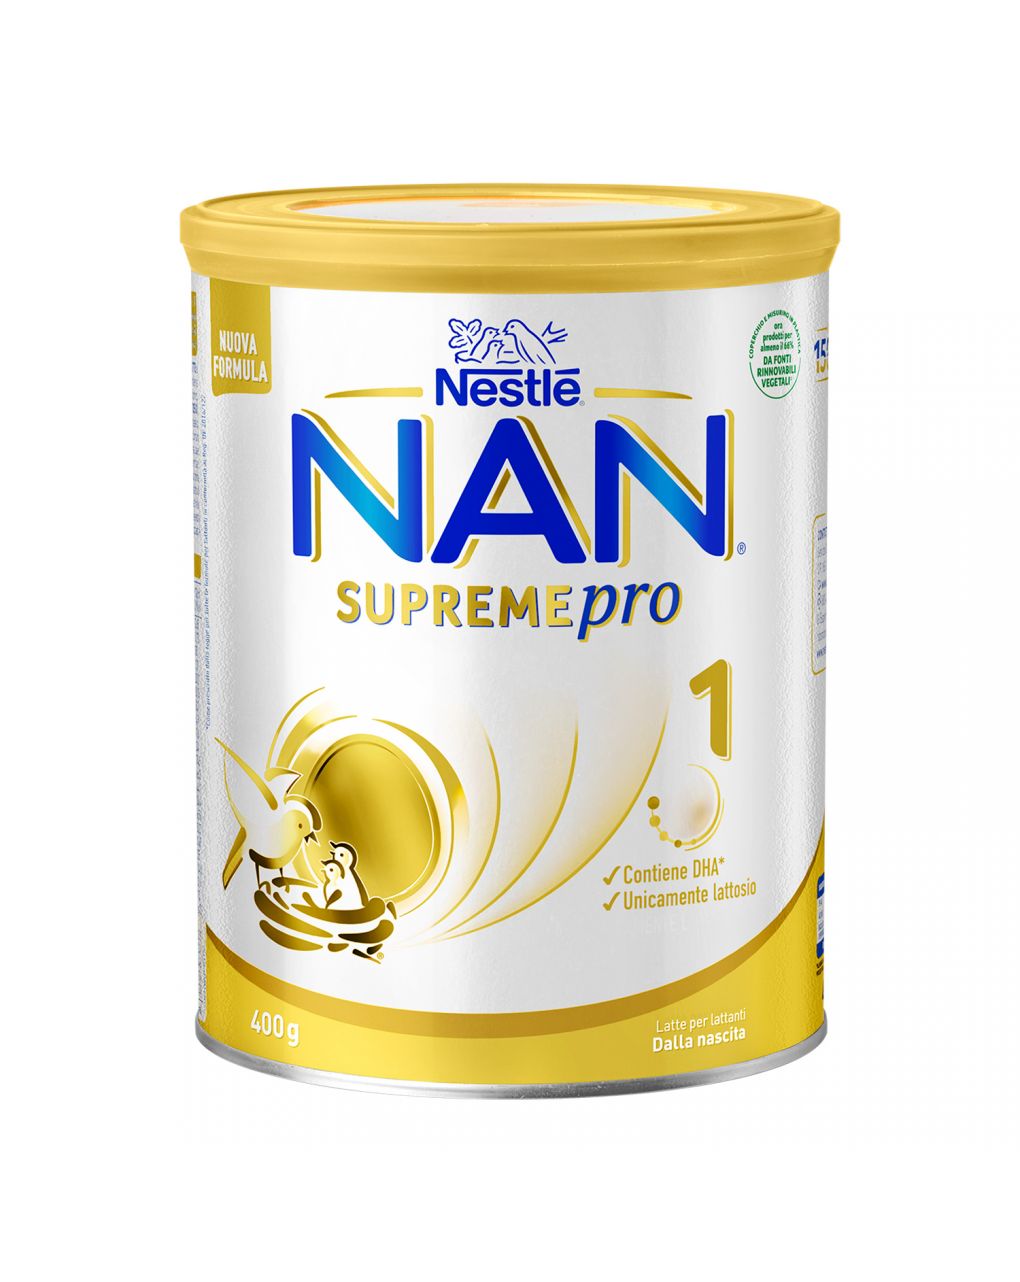 Nestlé nan supreme pro 1 - dalla nascita. latte per lattanti in polvere in latta da 400g